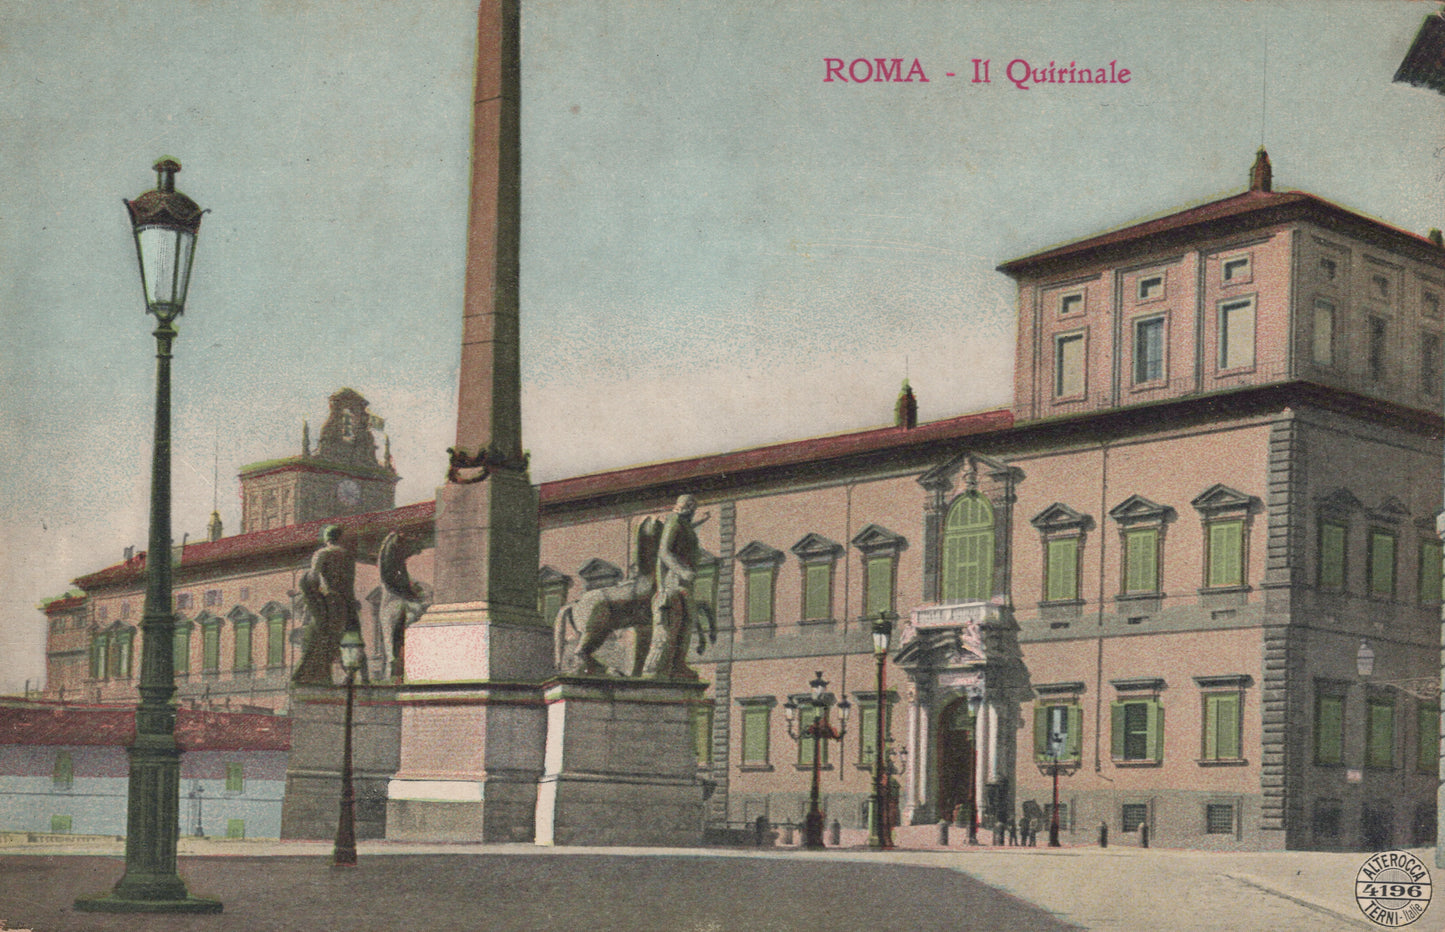 Il Quirinale, Rome